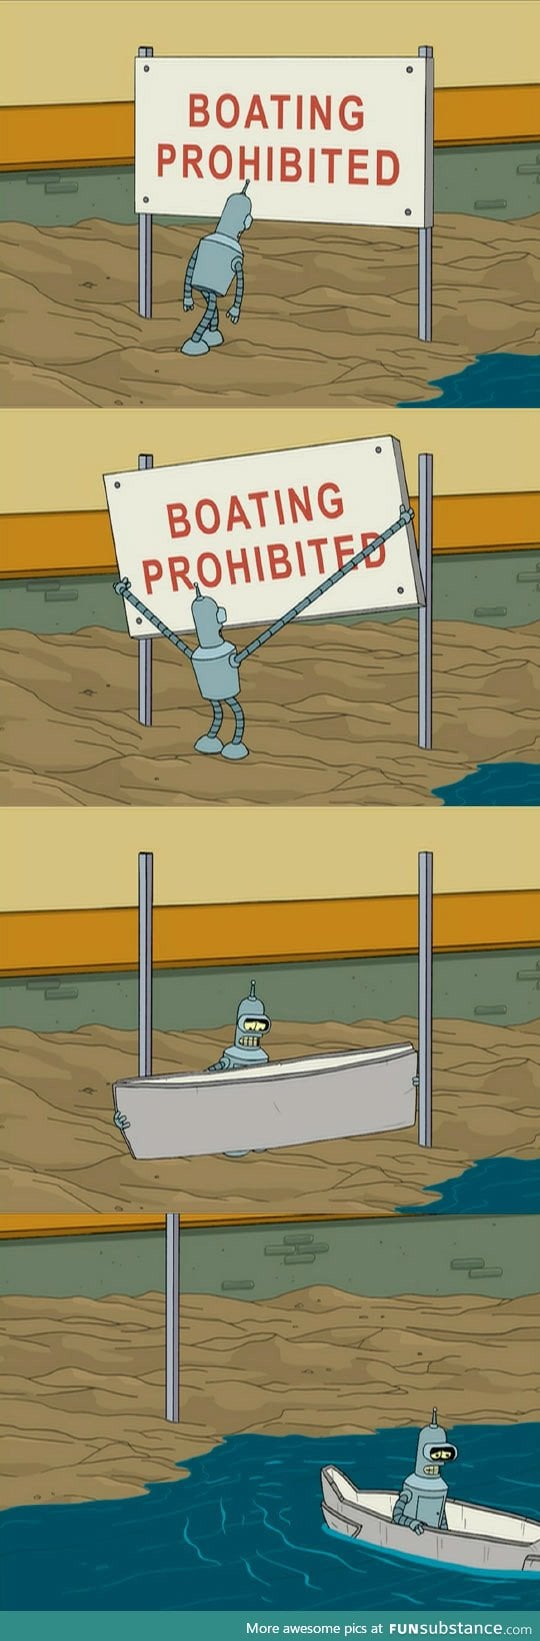 Bender gets it